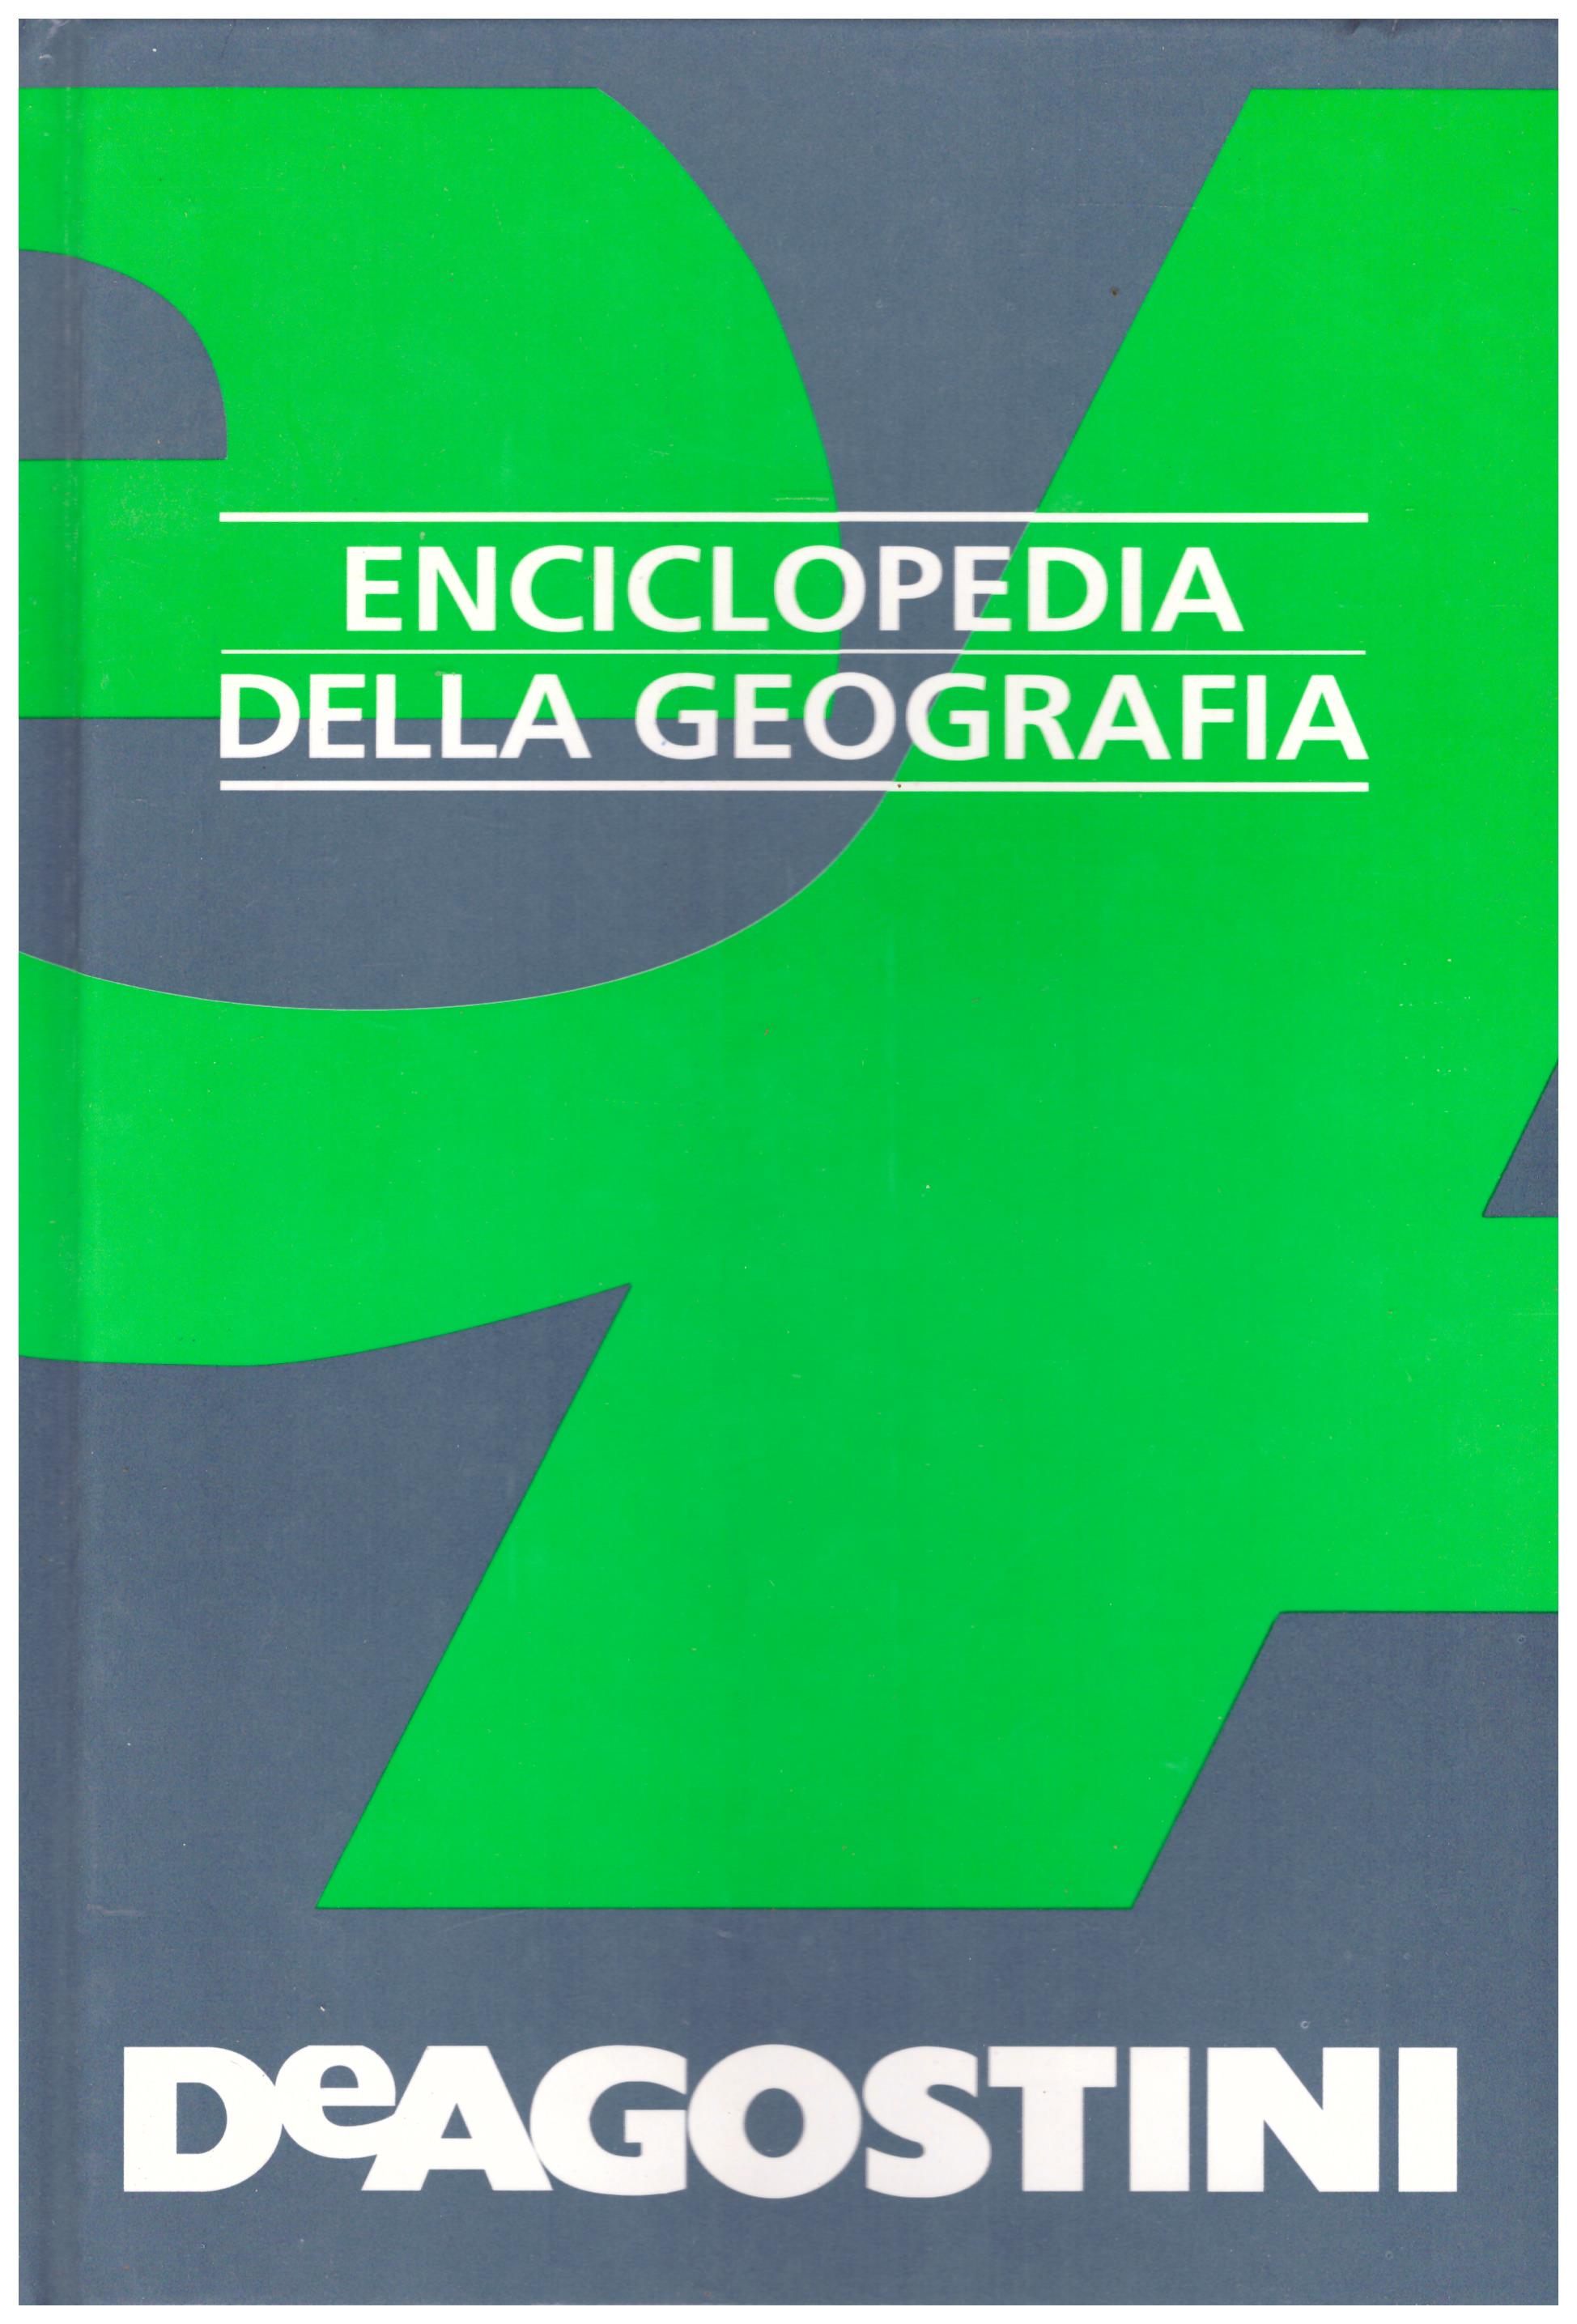 Titolo: Enciclopedia della geografia Autore: AA.VV.  Editore: DeAgostini, 1996